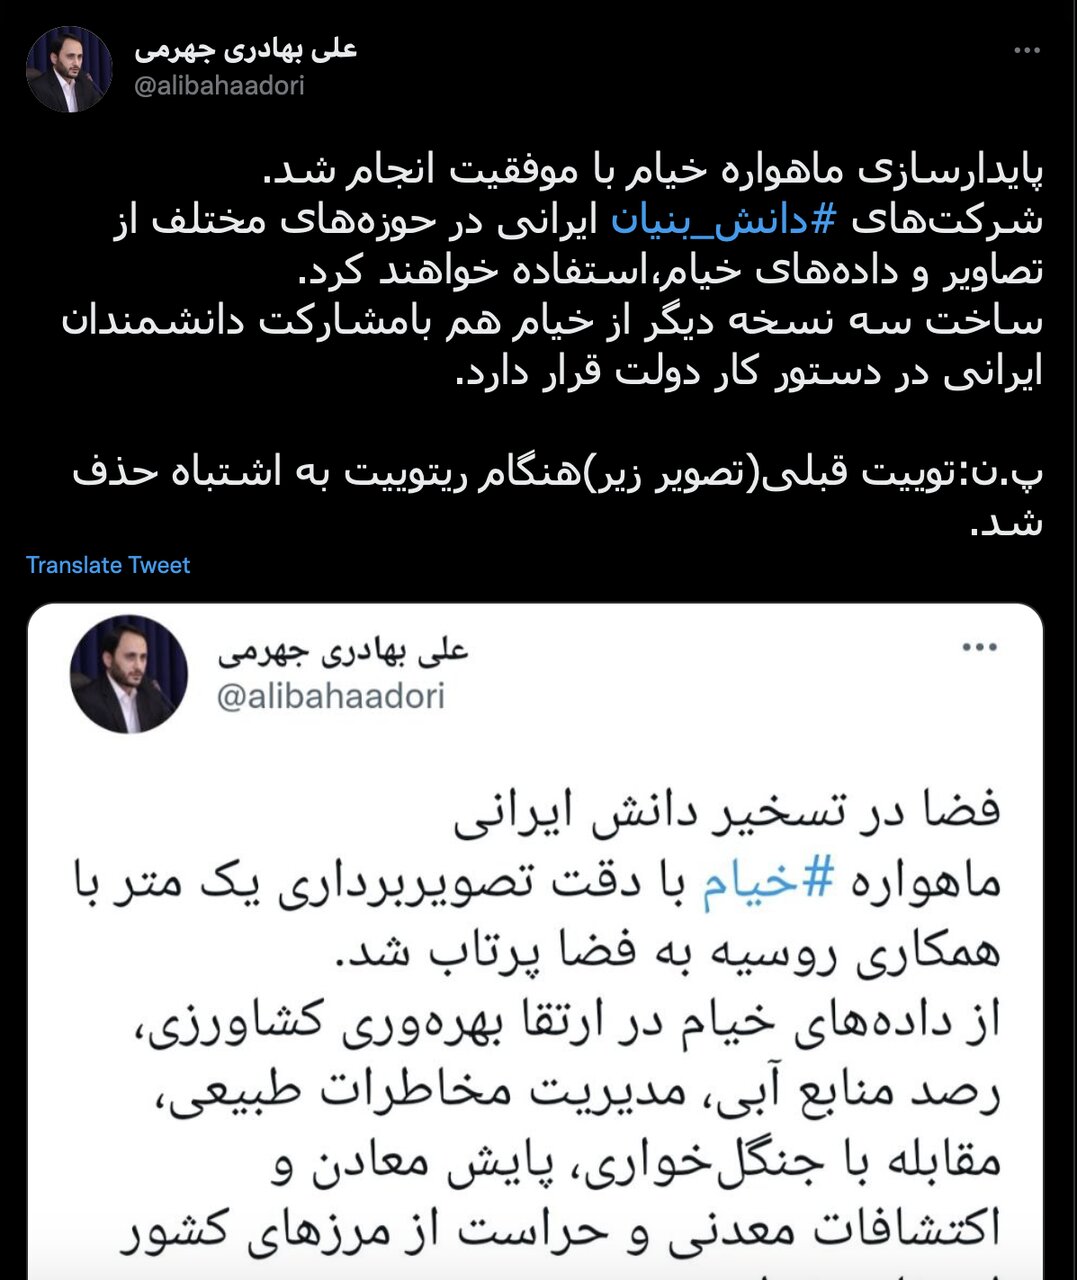 واکنش مسئولان به پرتاب ماهواره ایرانی «خیام»